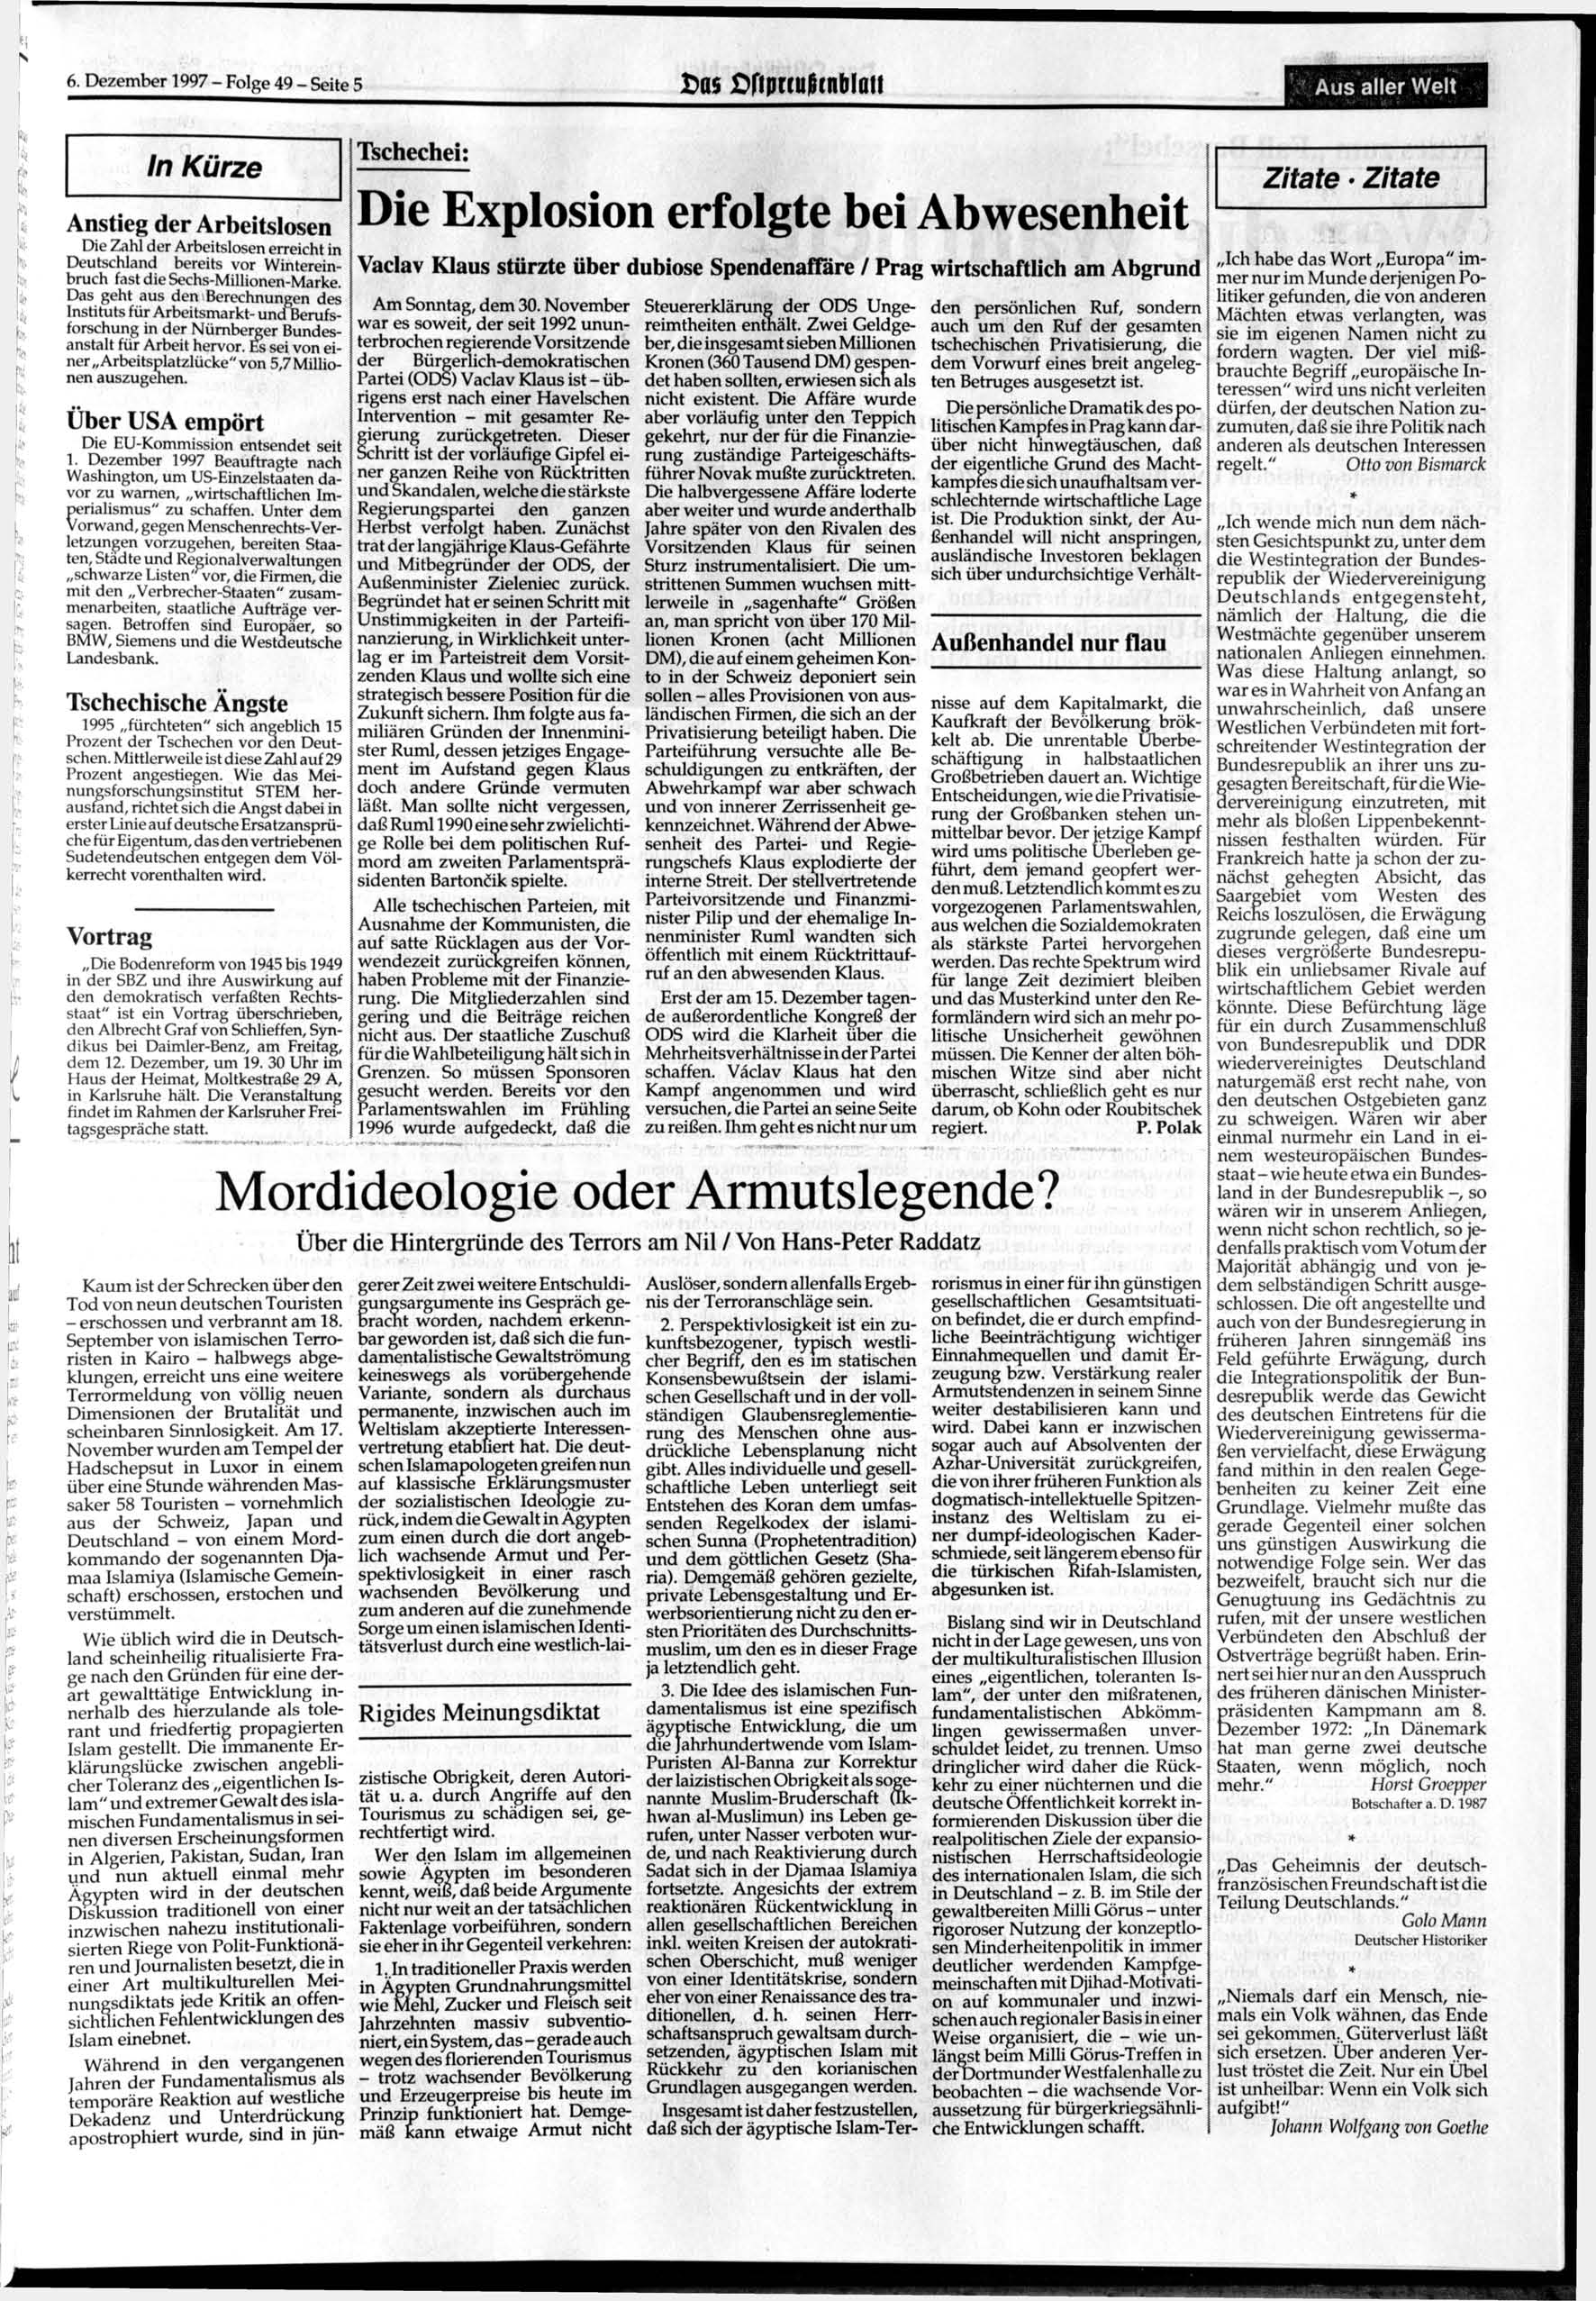 6. 1997 - Folge 49 - Seite 5 t>a$ Cftprculhnblatt Aus aller Welt In Kürze Anstieg der Arbeitslosen Tschechische Ängste 1995 fürchteten" sich angeblich 15 Prozent der Tschechen vor den Deutschen.